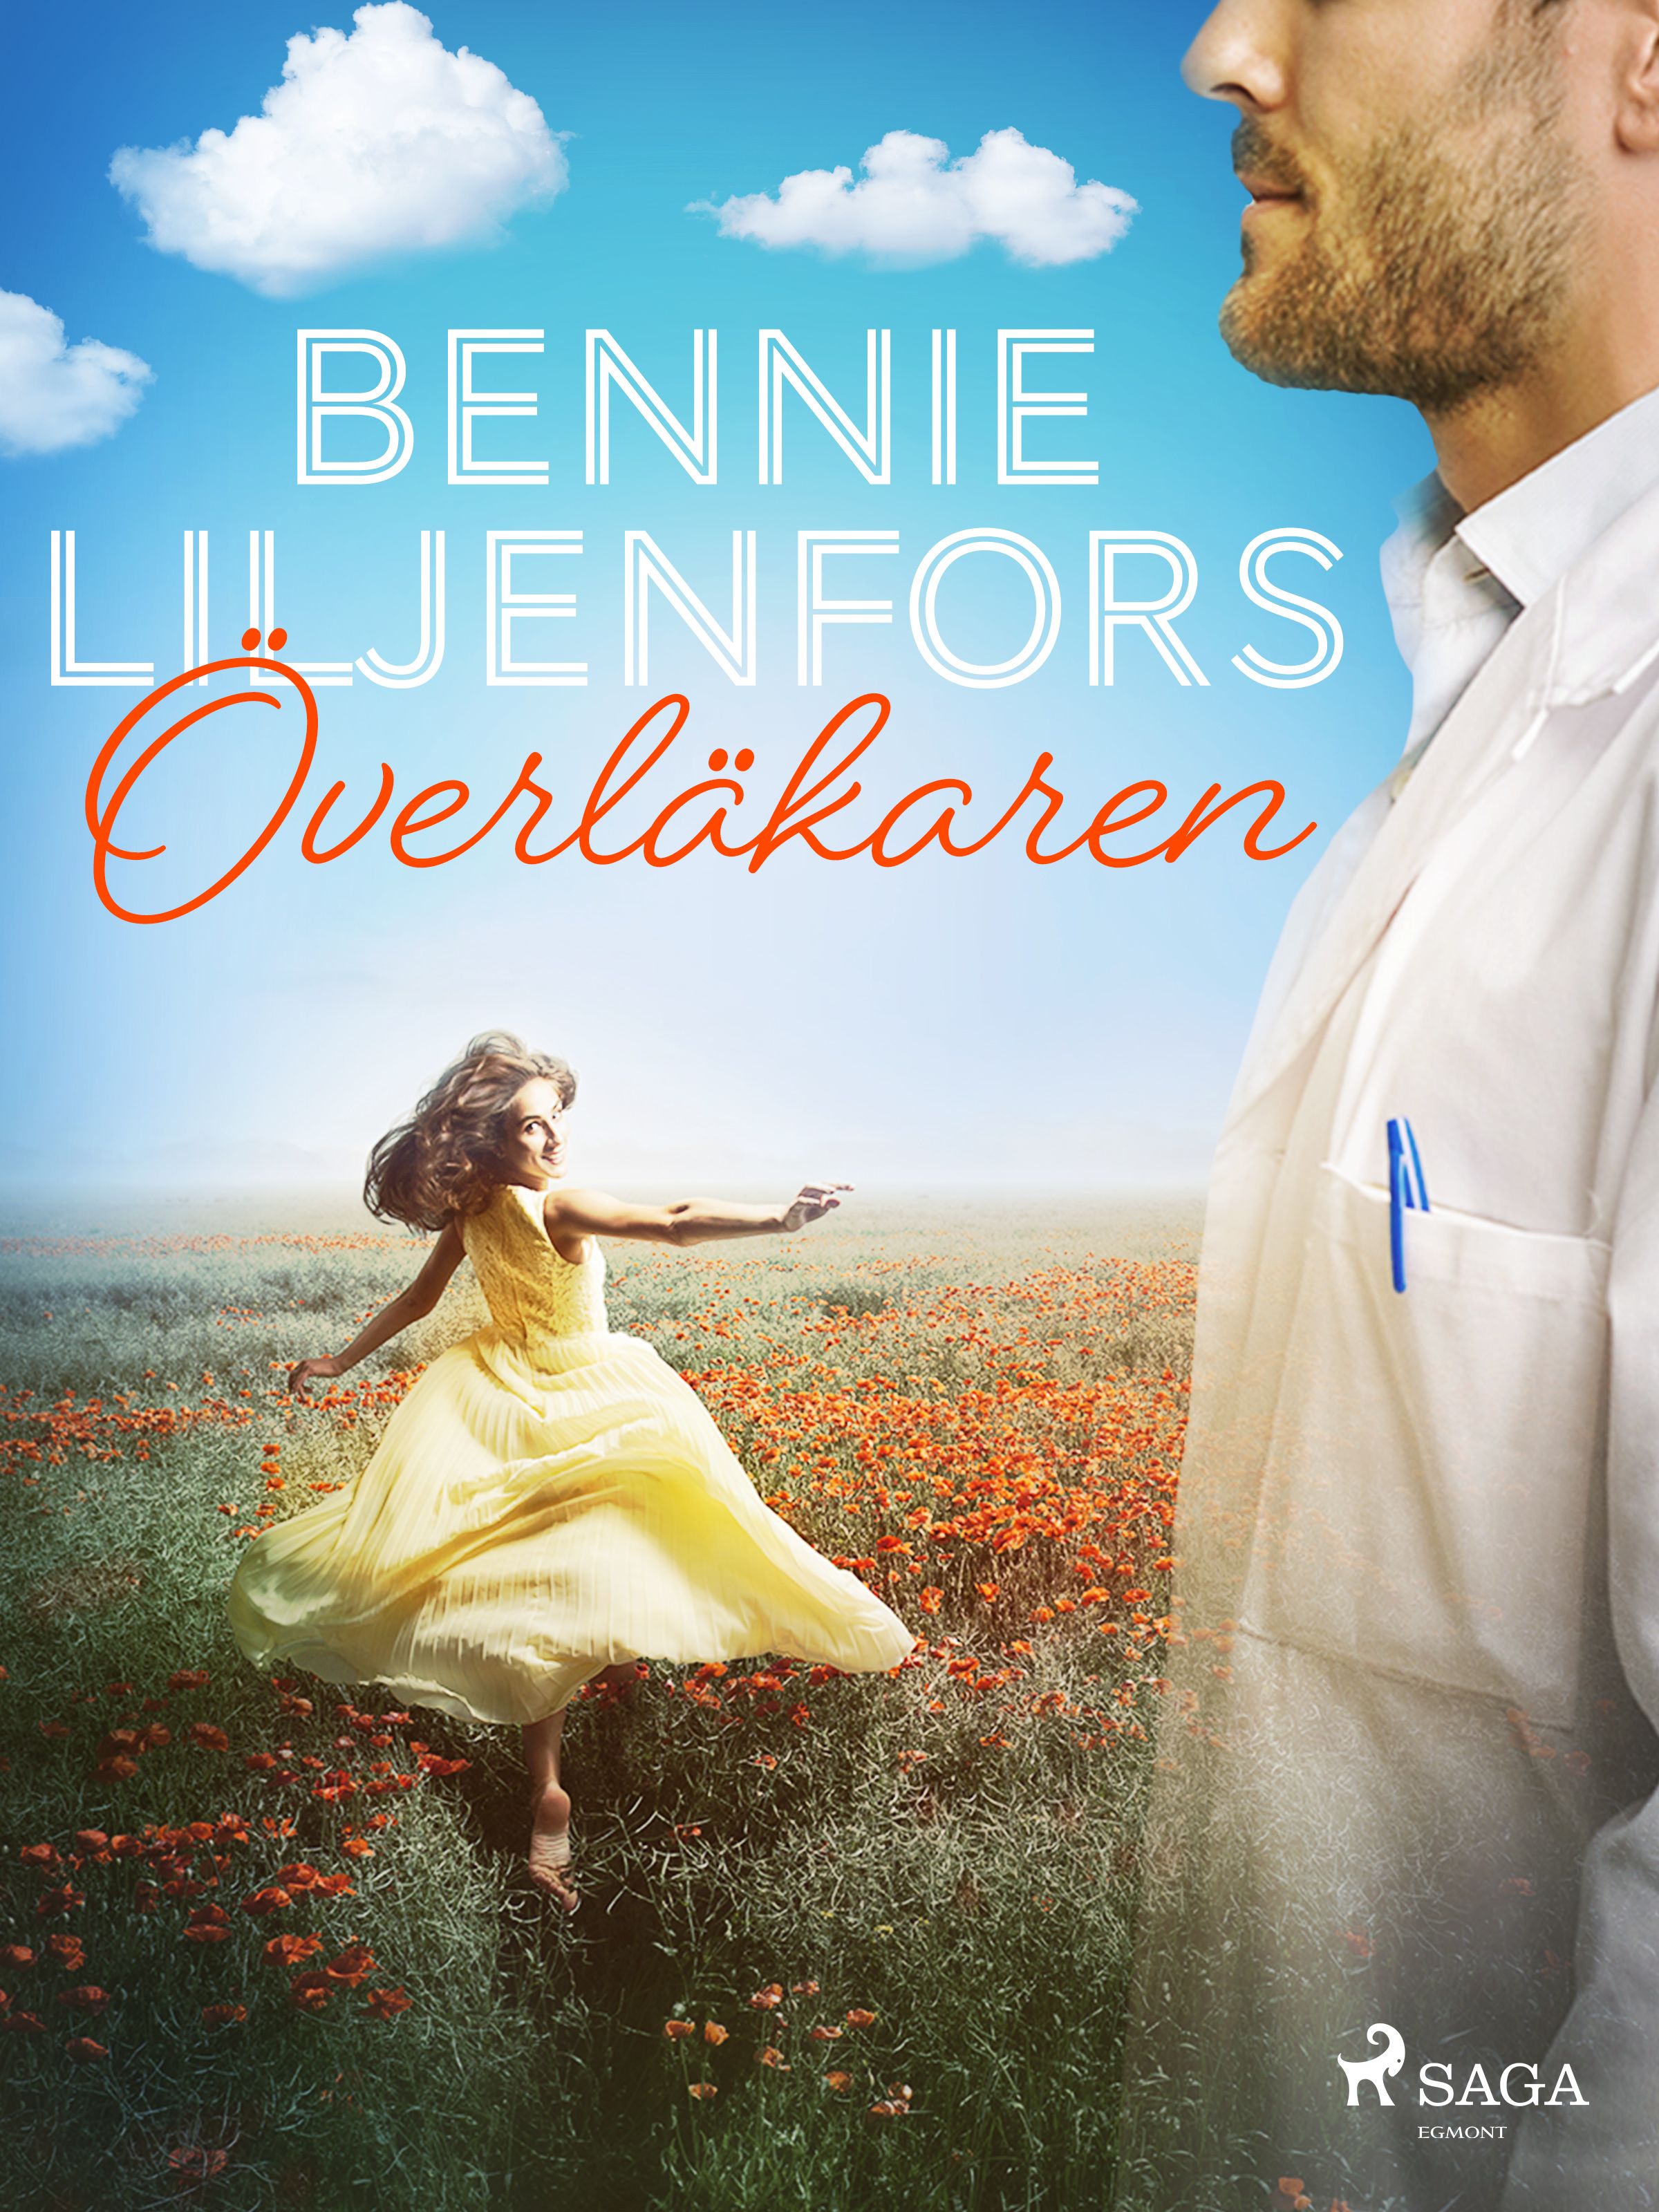 Överläkaren, e-bok av Bennie Liljenfors